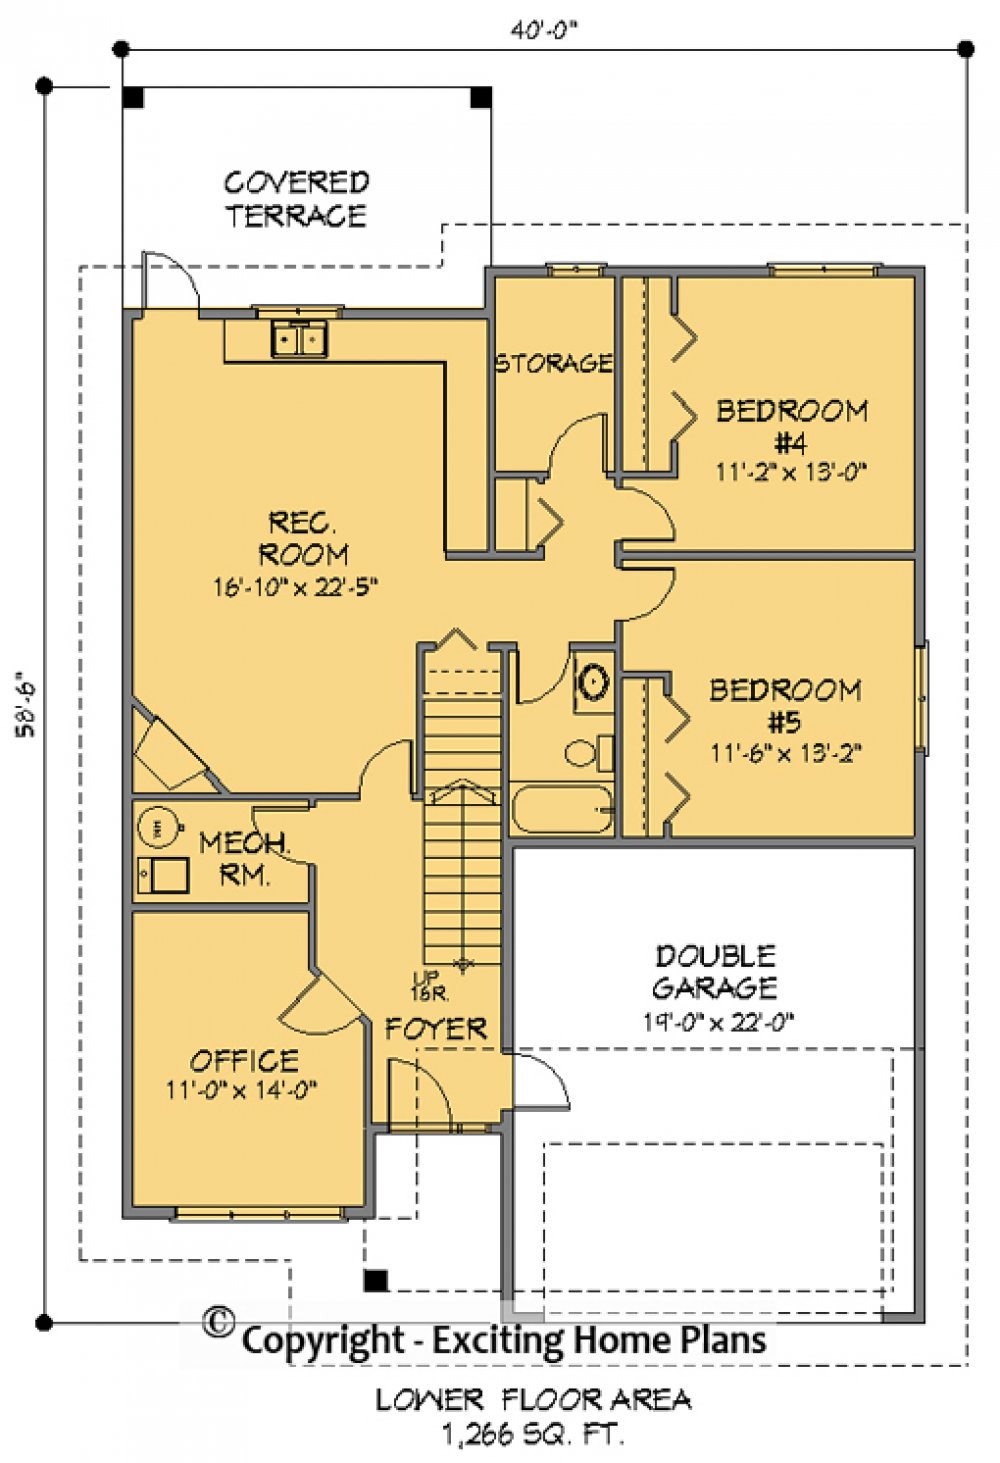 House Plan E1091-10 Lower Floor Plan